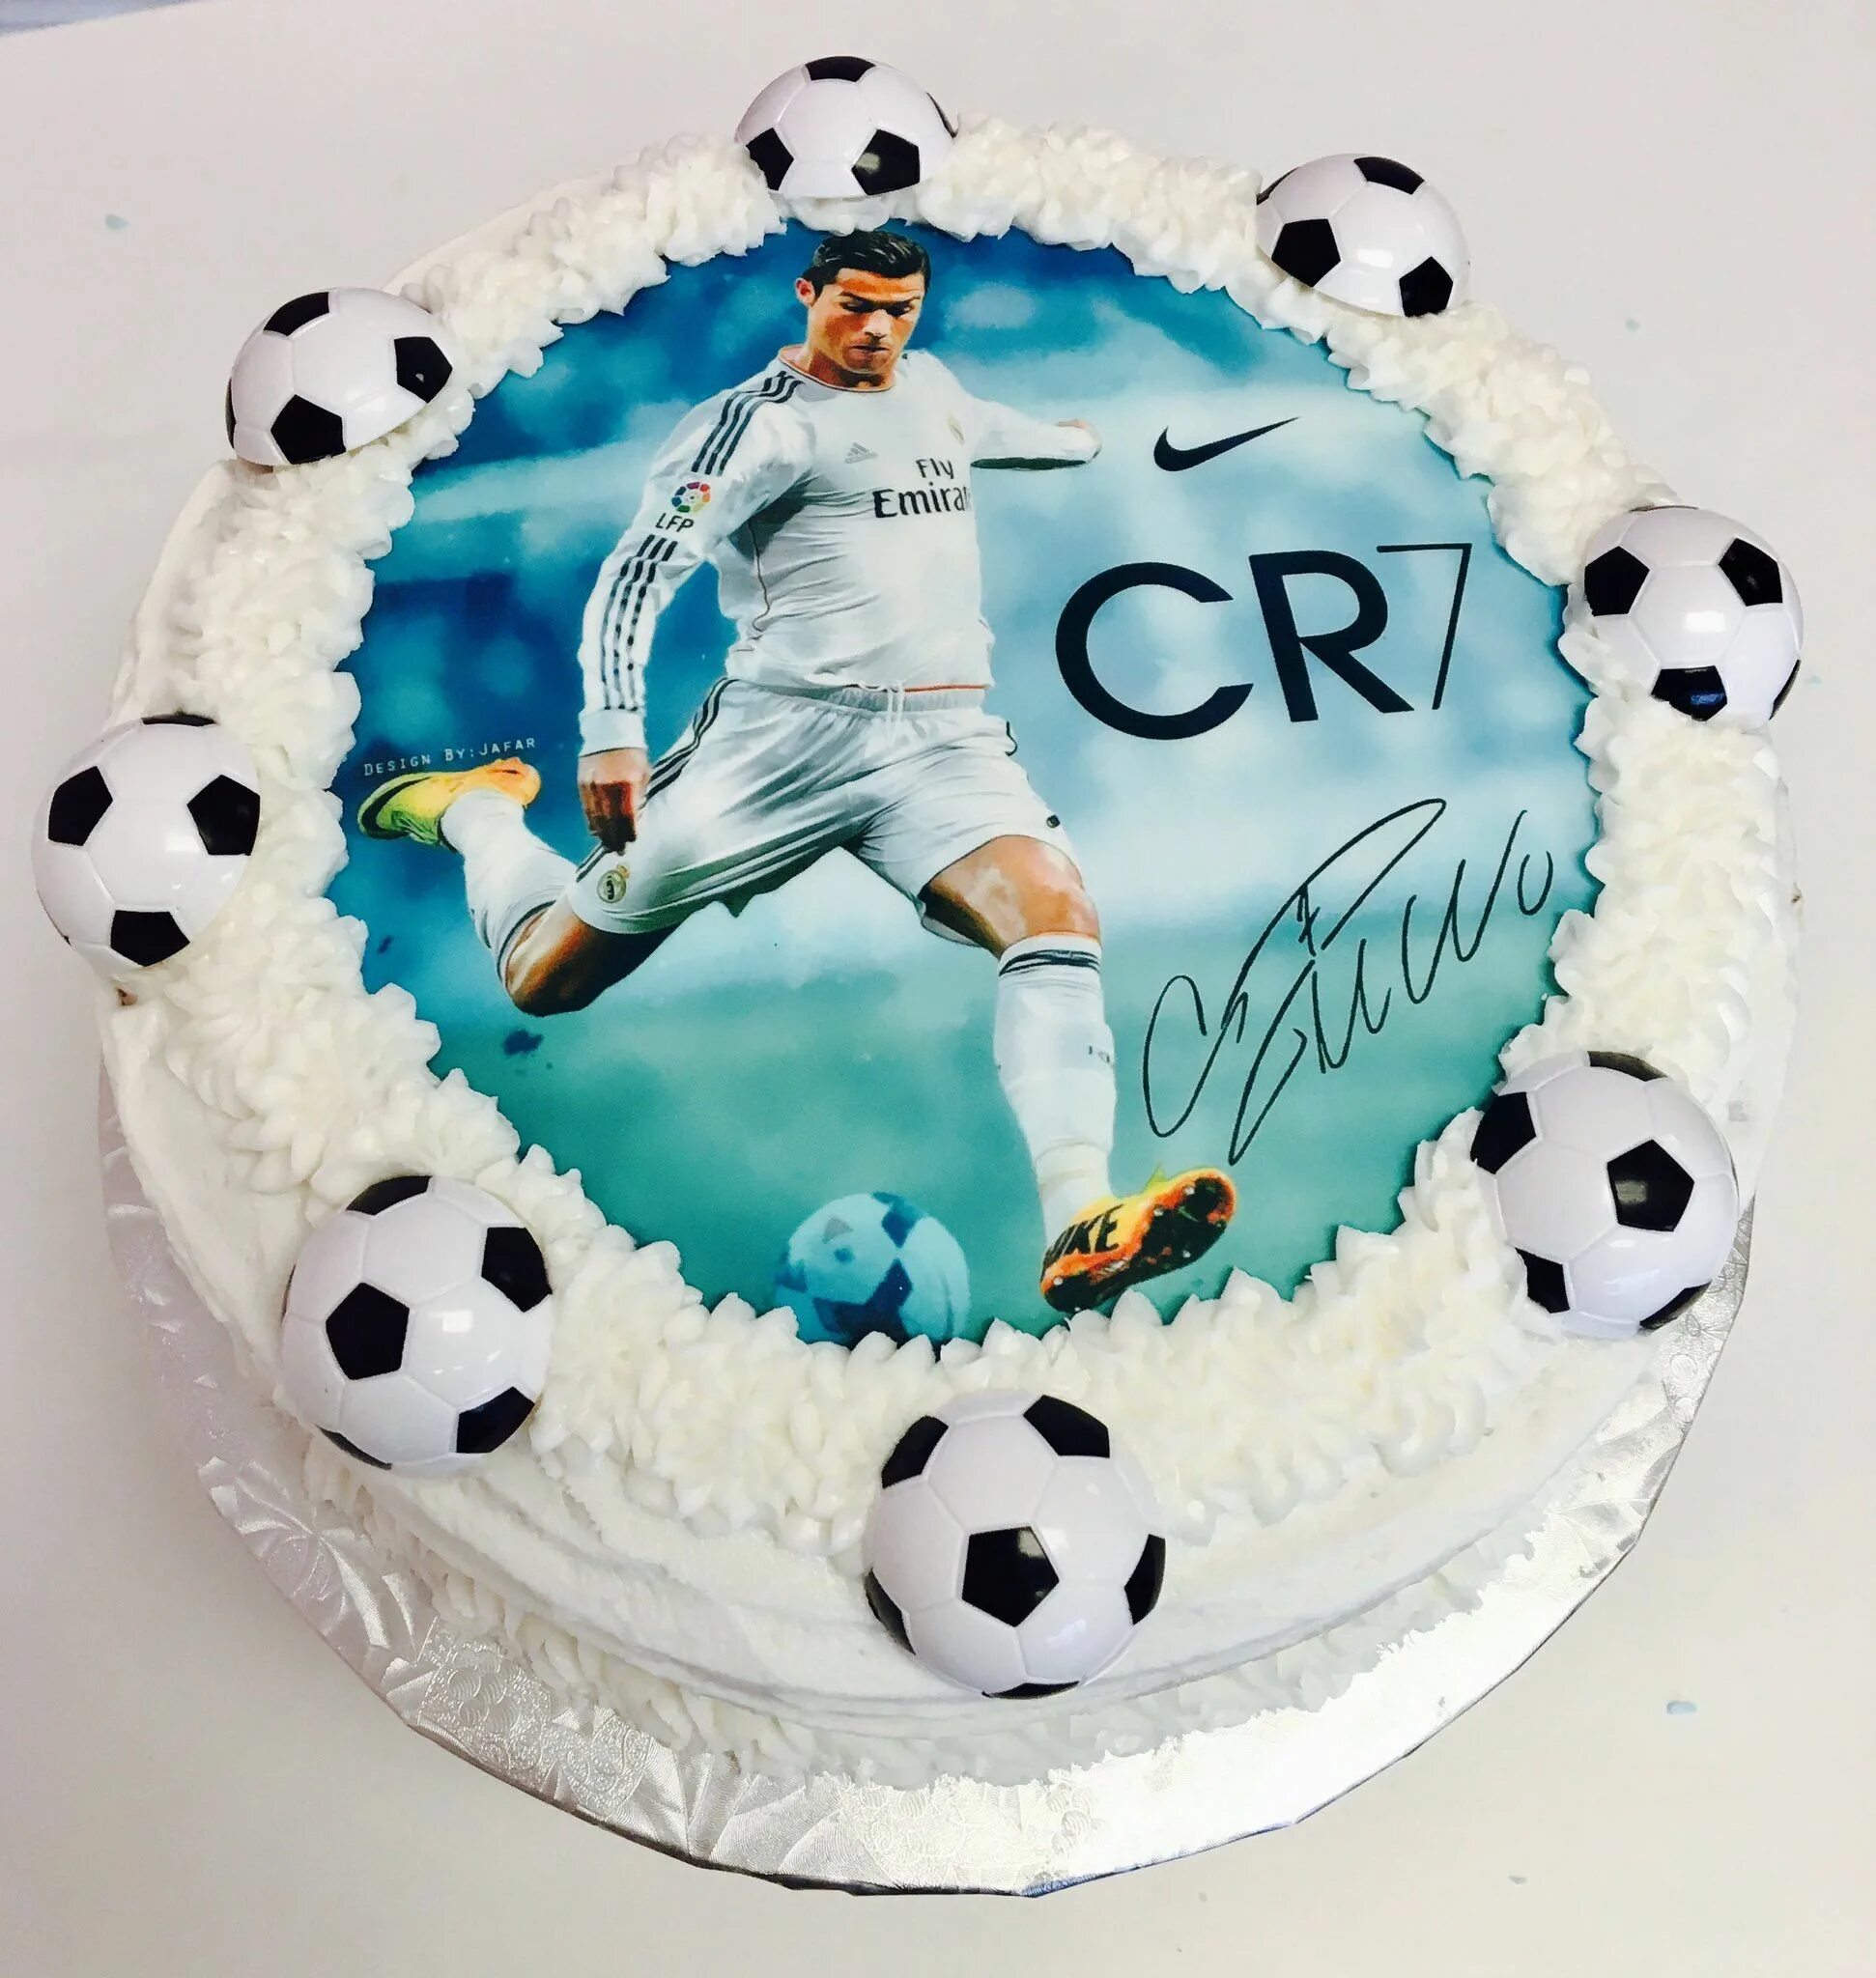 Сахарная картинка мужчине. Торт для мальчиков футбольные с Криштиану Роналду. Торт для мальчиков Криштиану Роналду. Торт Реал Мадрид с Криштиану Роналду. Торт с криштьяно Роналдо.